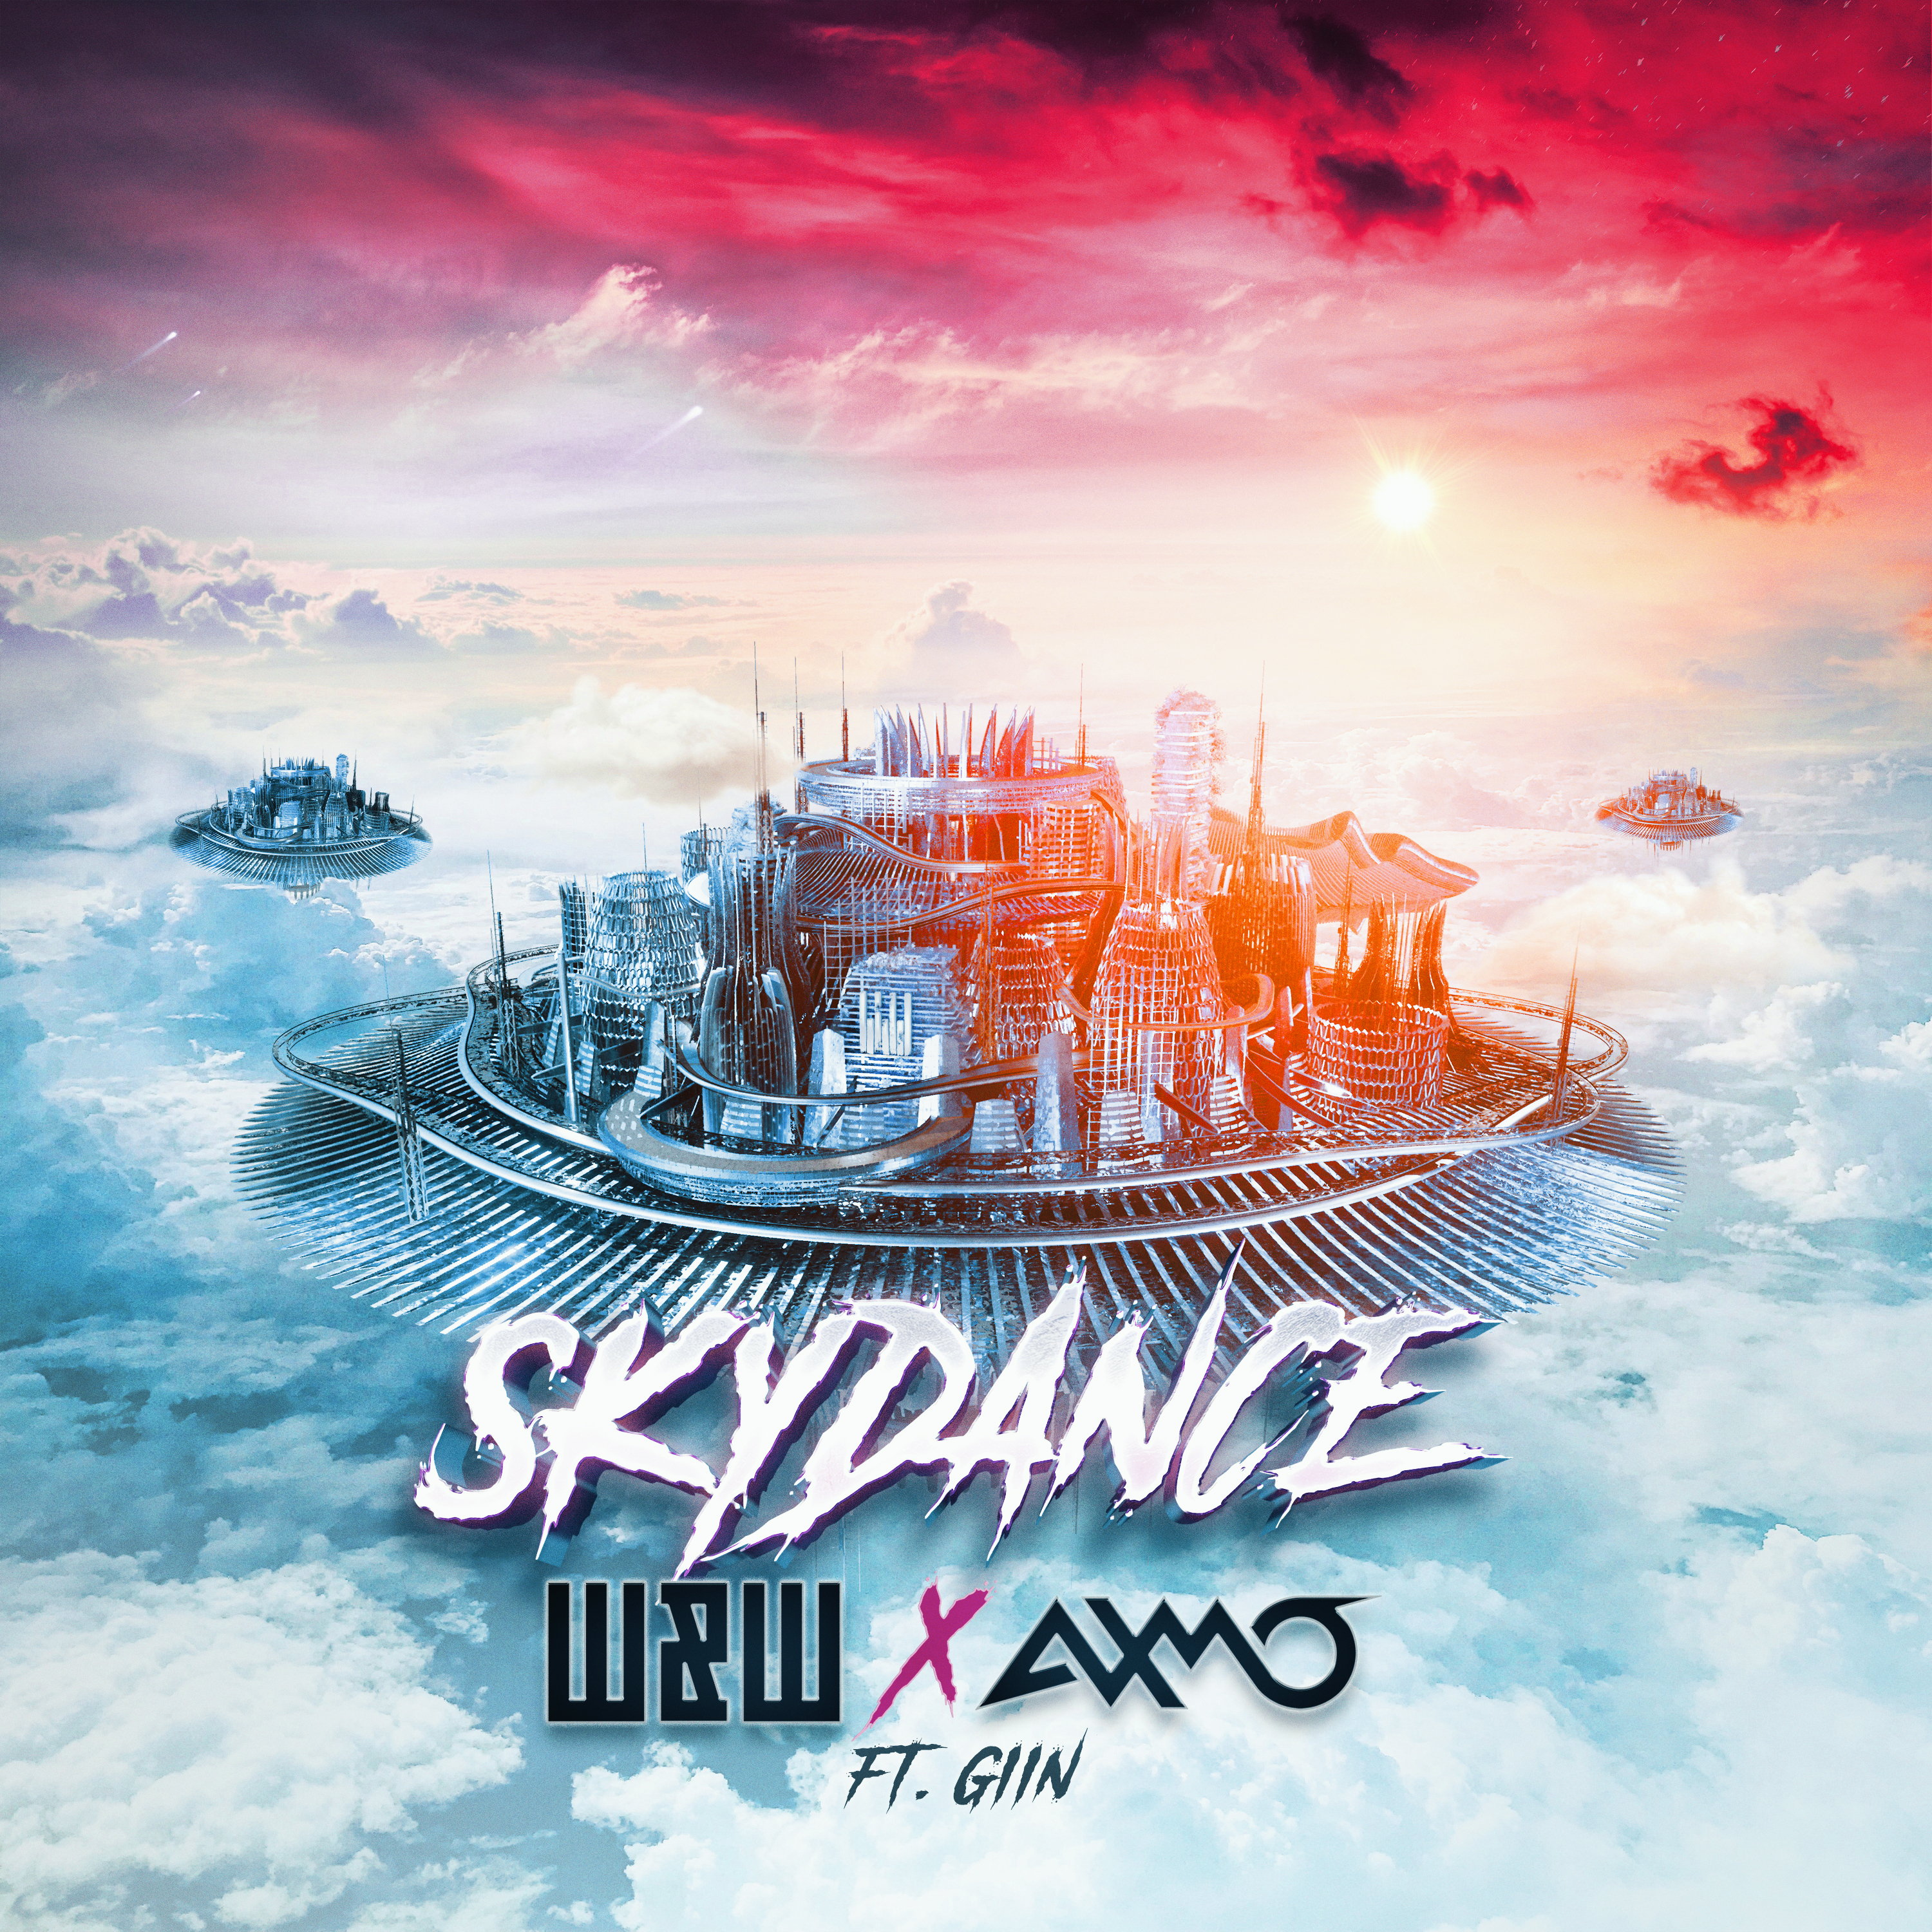 W&W x AXMO ft. Giin – Skydance